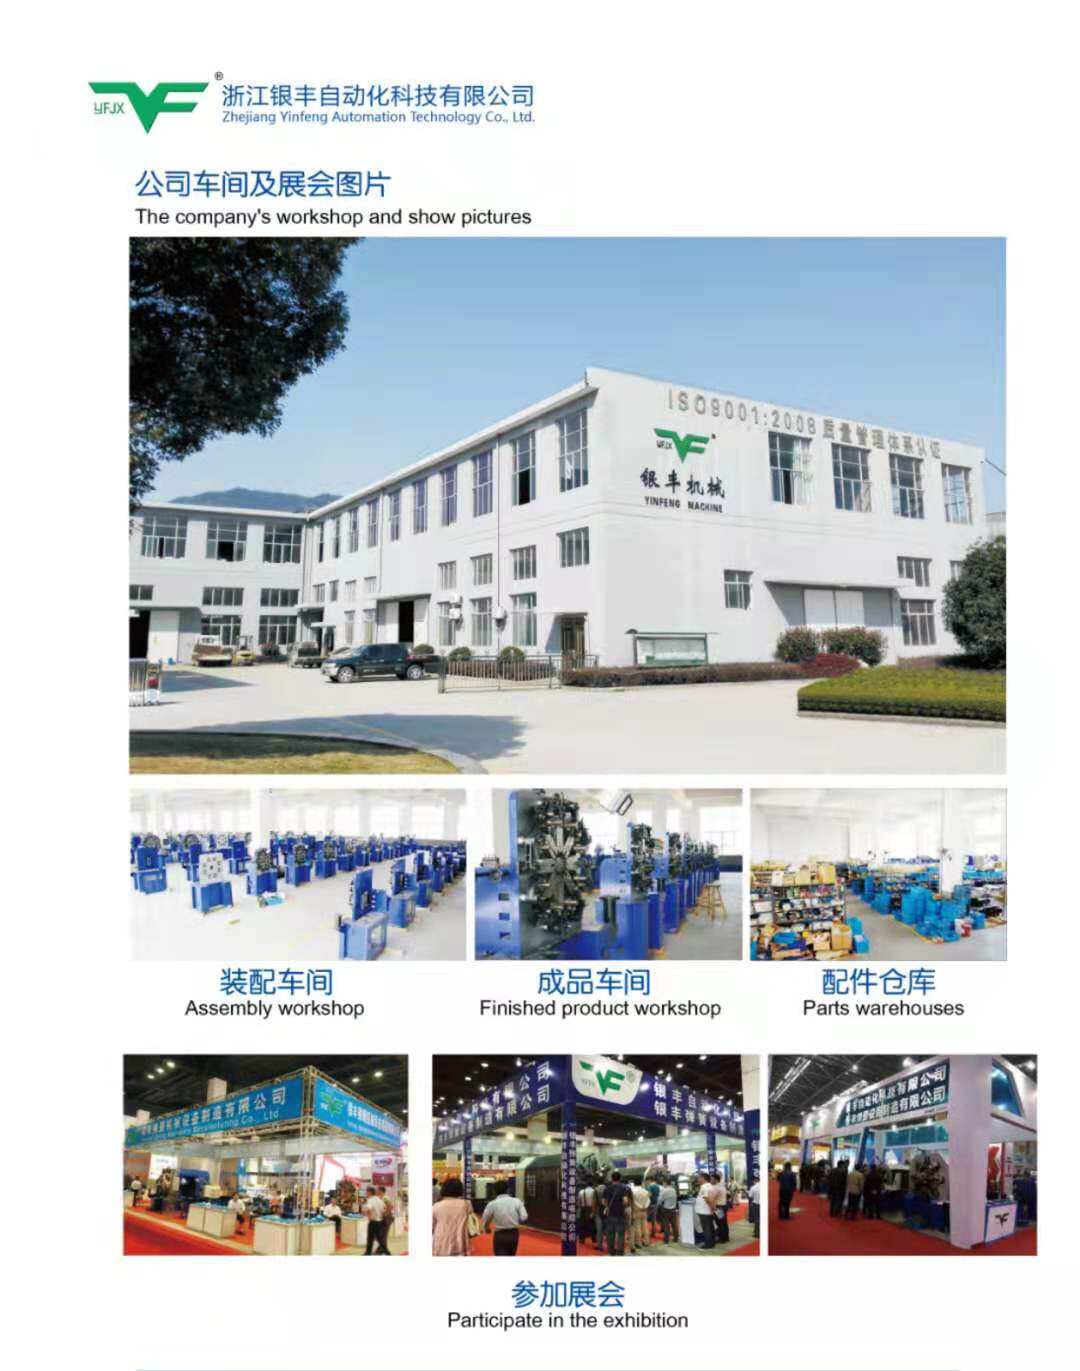 Zhejiang Yinfeng Automation Technology Co., Ltd